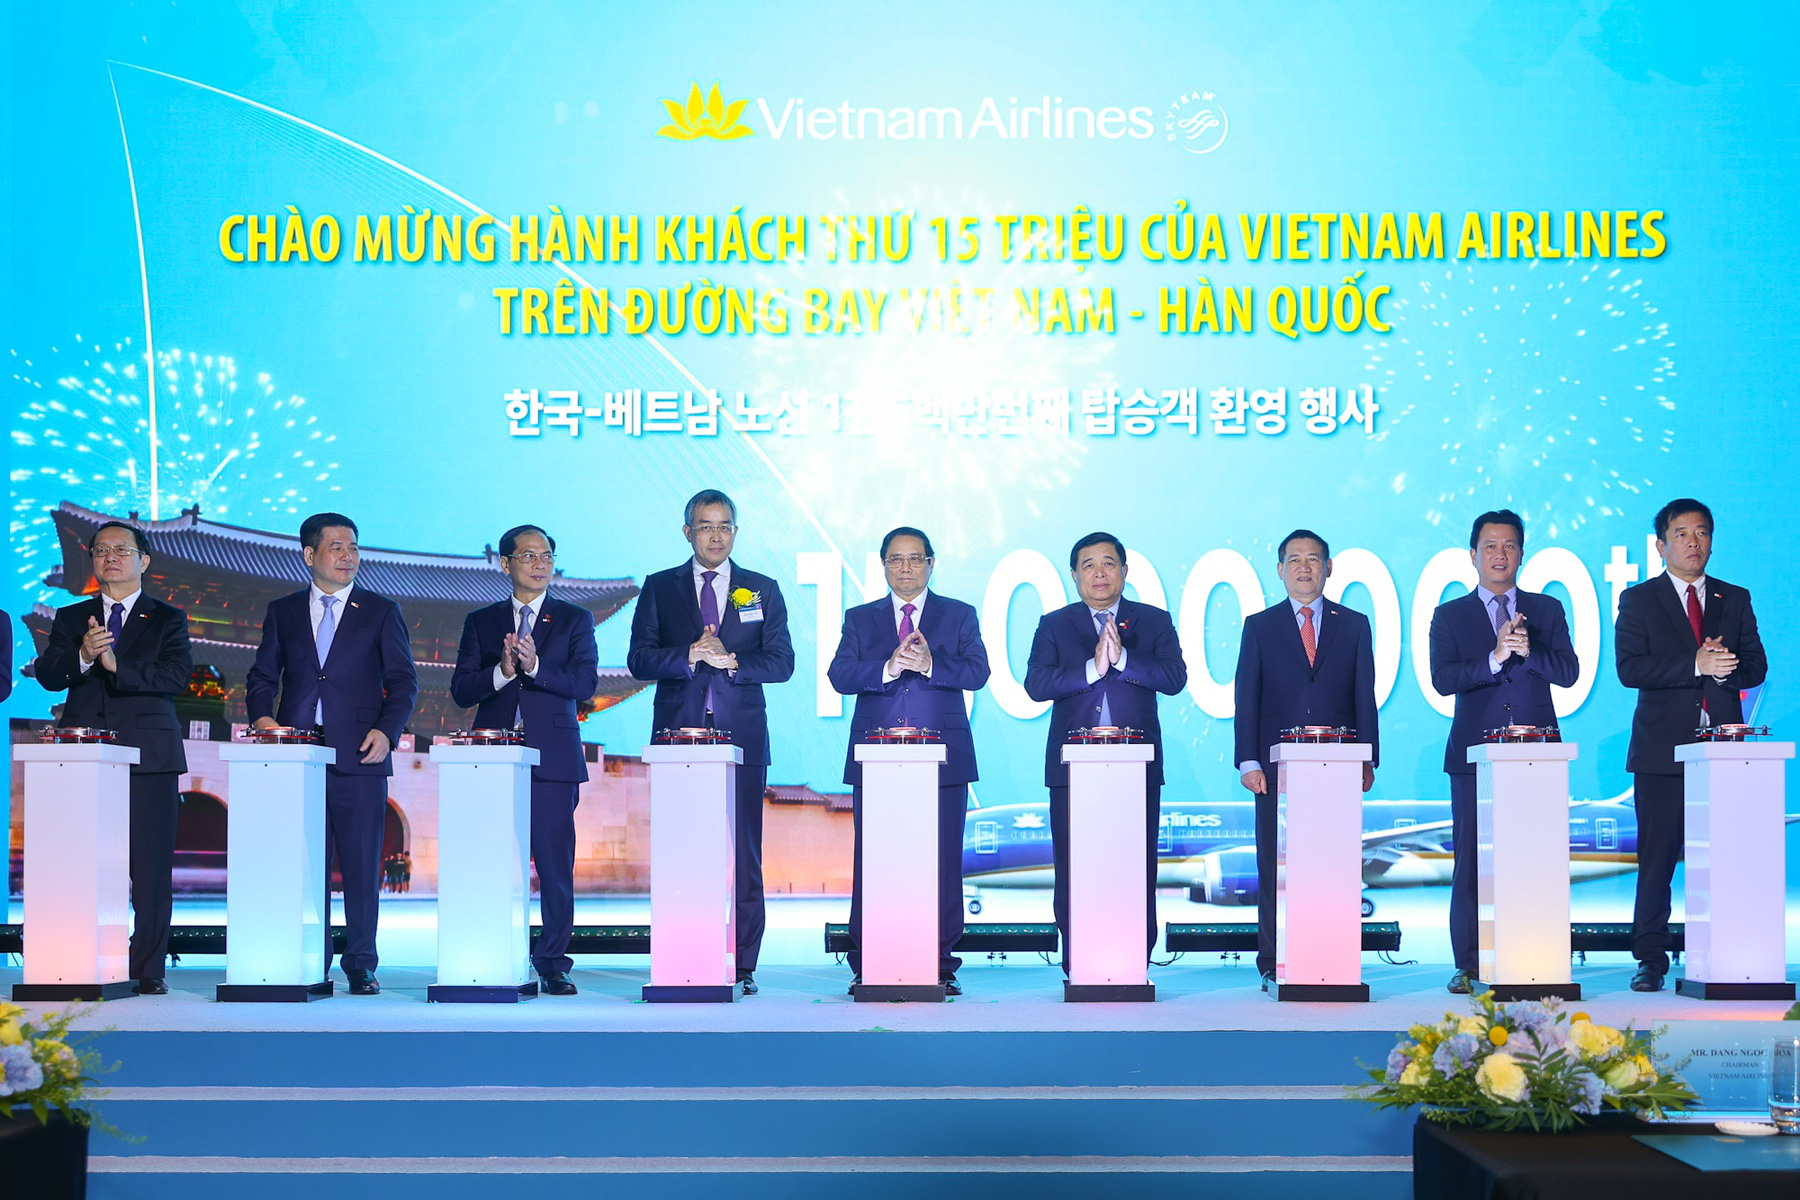 Vietnam Airlines đã tổ chức lễ kỷ niệm 30 năm đường bay Việt Nam - Hàn Quốc và chào mừng hành khách thứ 15 triệu của Vietnam Airlines trên đường bay này - Ảnh: VNA